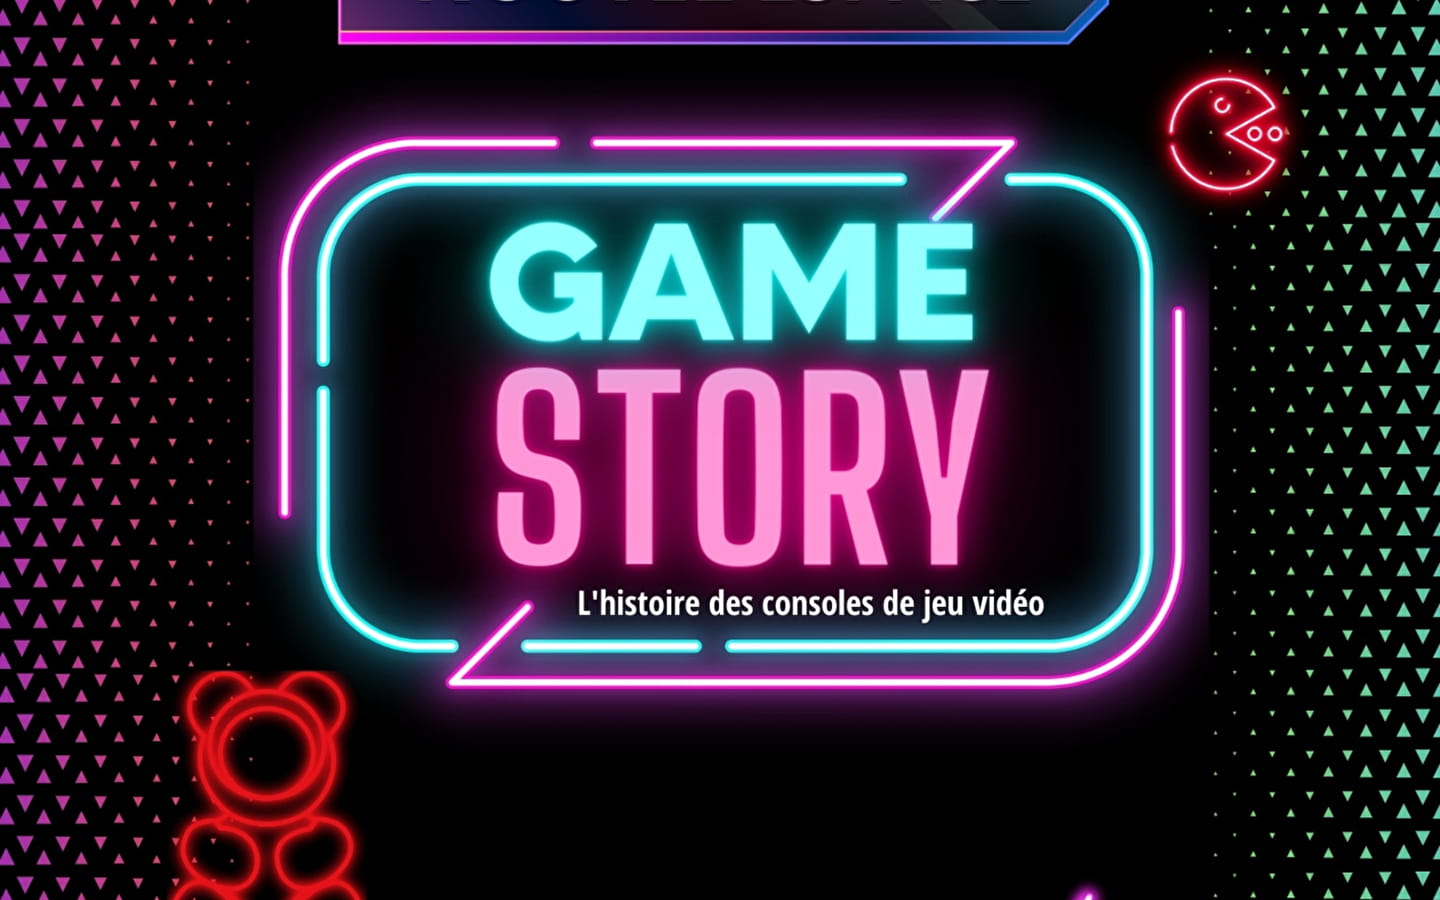 Game story: Geschichten von Konsolen und Videospielen